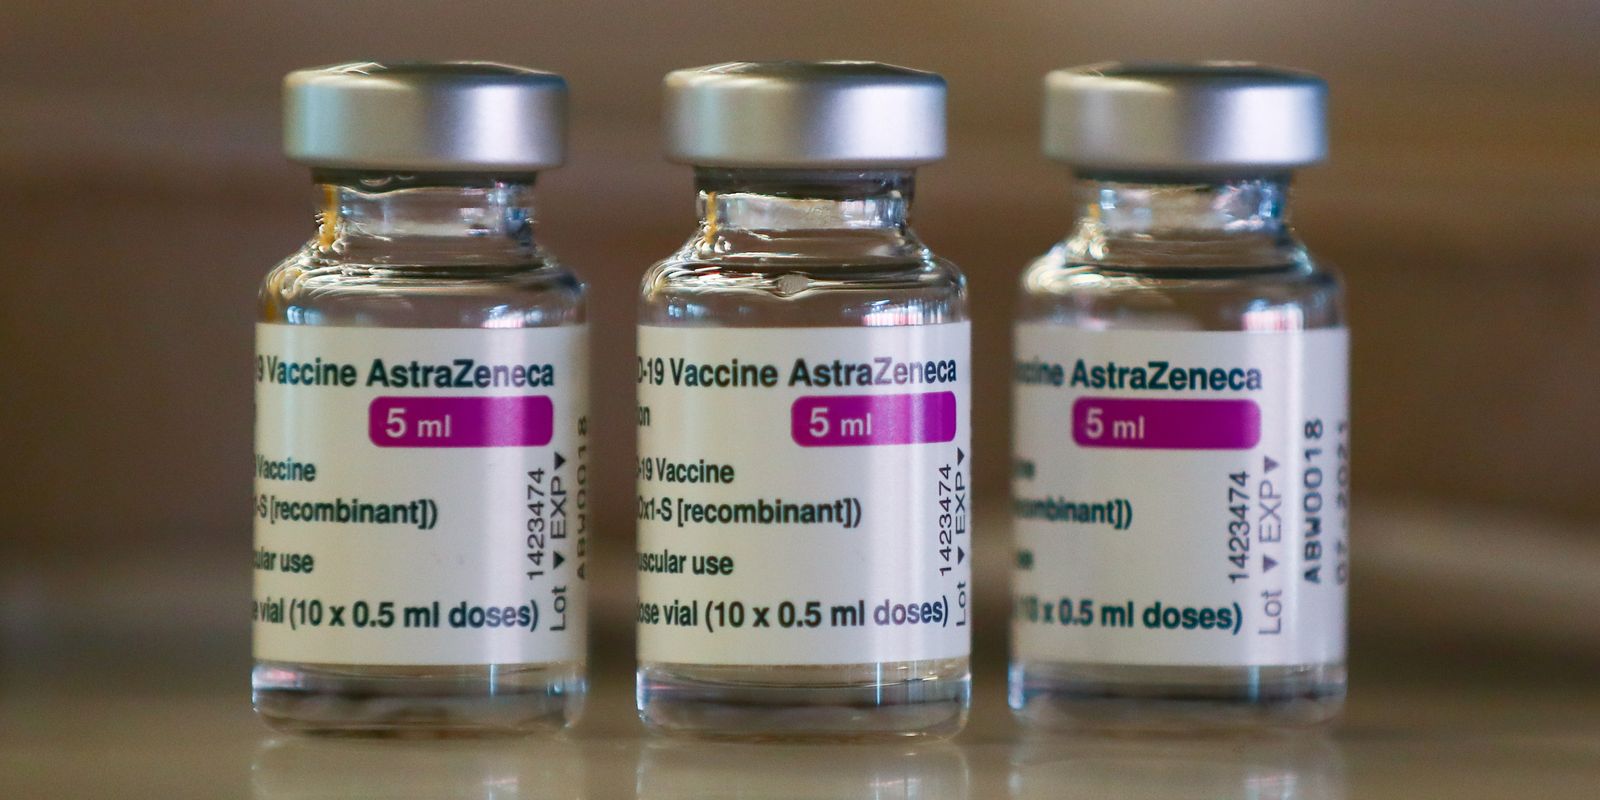 Brasil: Fiocruz assina contrato para produção 100% nacional da vacina da AstraZeneca